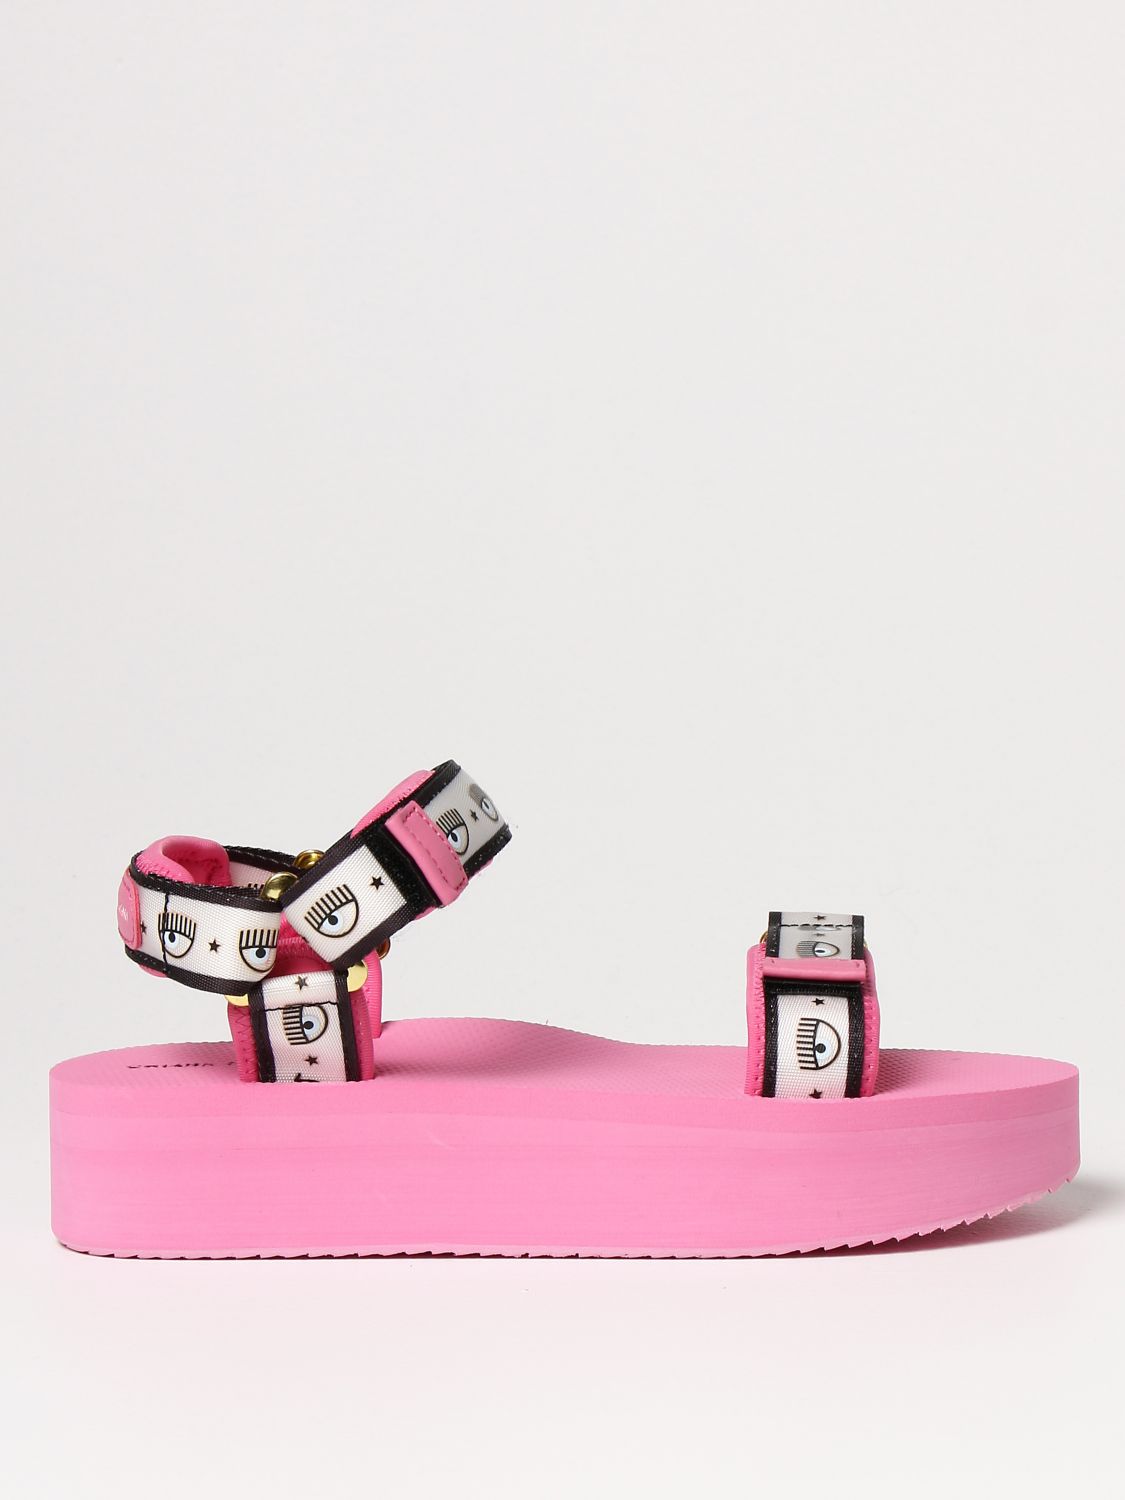 Sandales à plaque logo Cuir Chiara Ferragni en coloris Rose Femme Chaussures Chaussures plates Sandales plates 